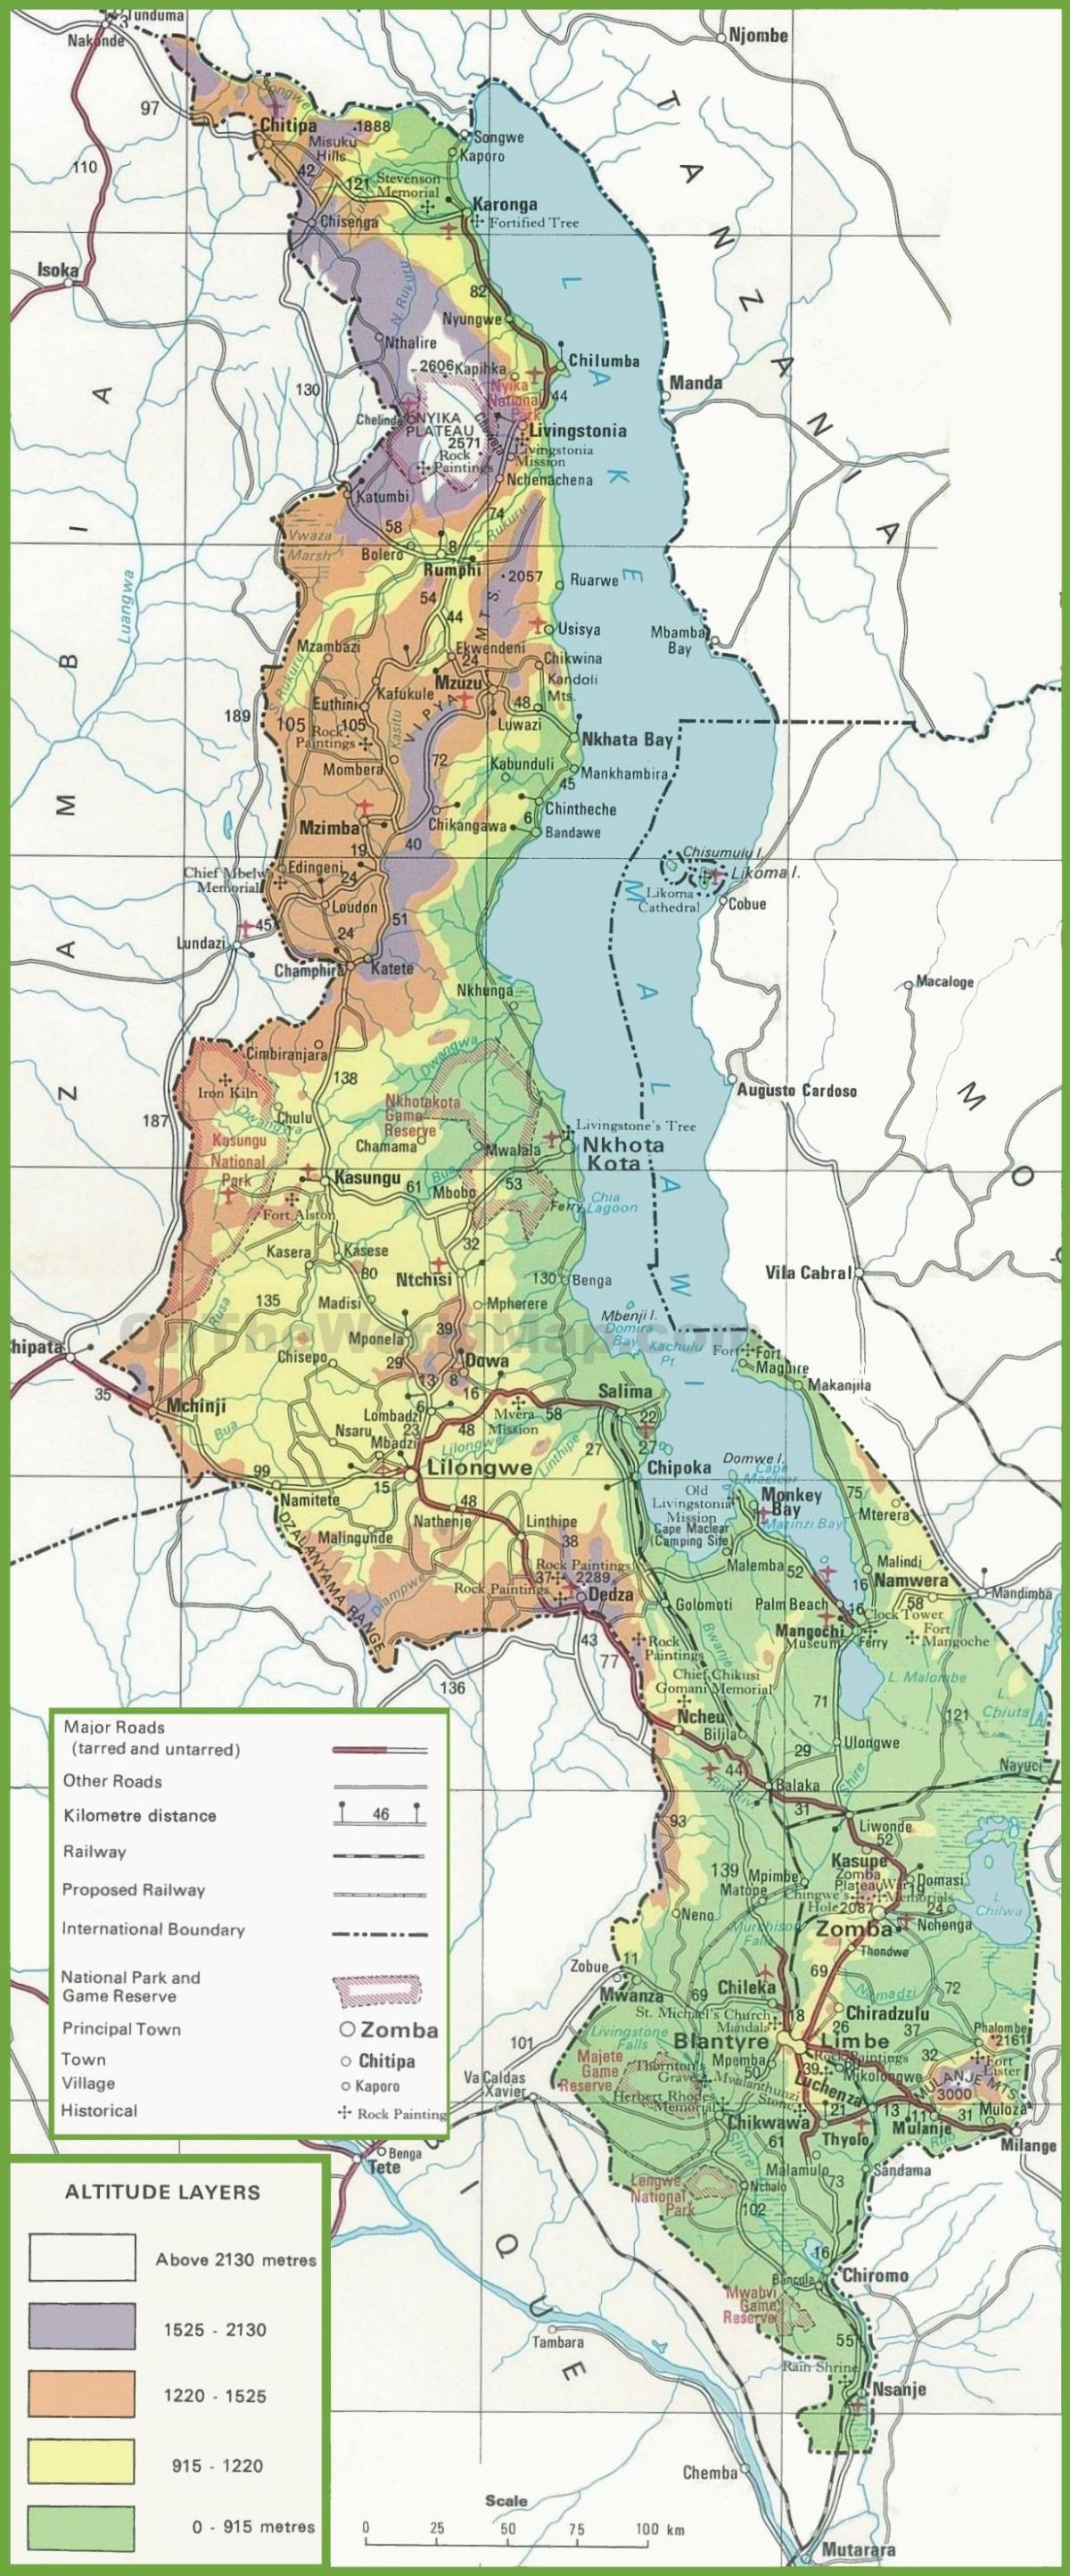 mappa di mappa fisica del Malawi